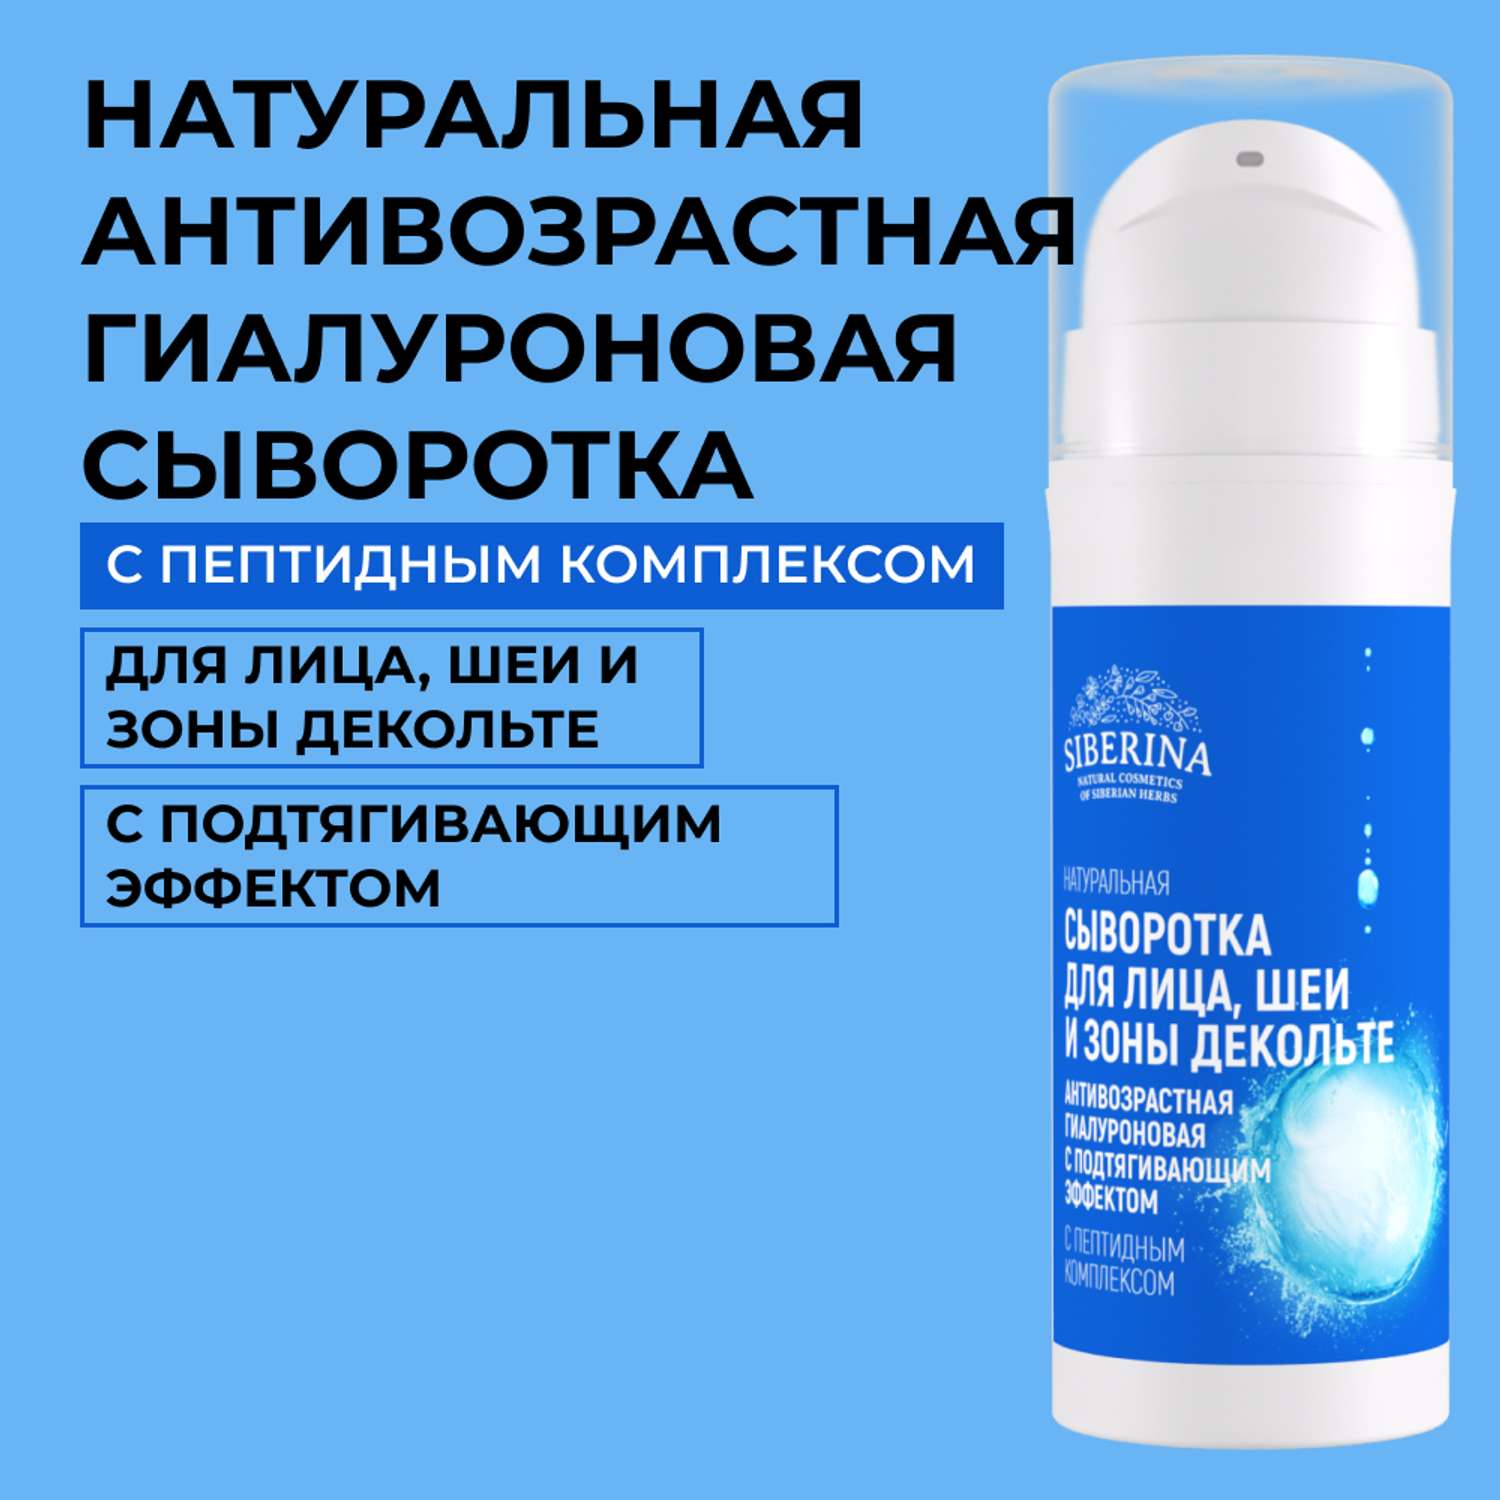 Сыворотка для лица Siberina натуральная антивозрастная гиалуроновая с подтягивающим эффектом 30 мл - фото 1